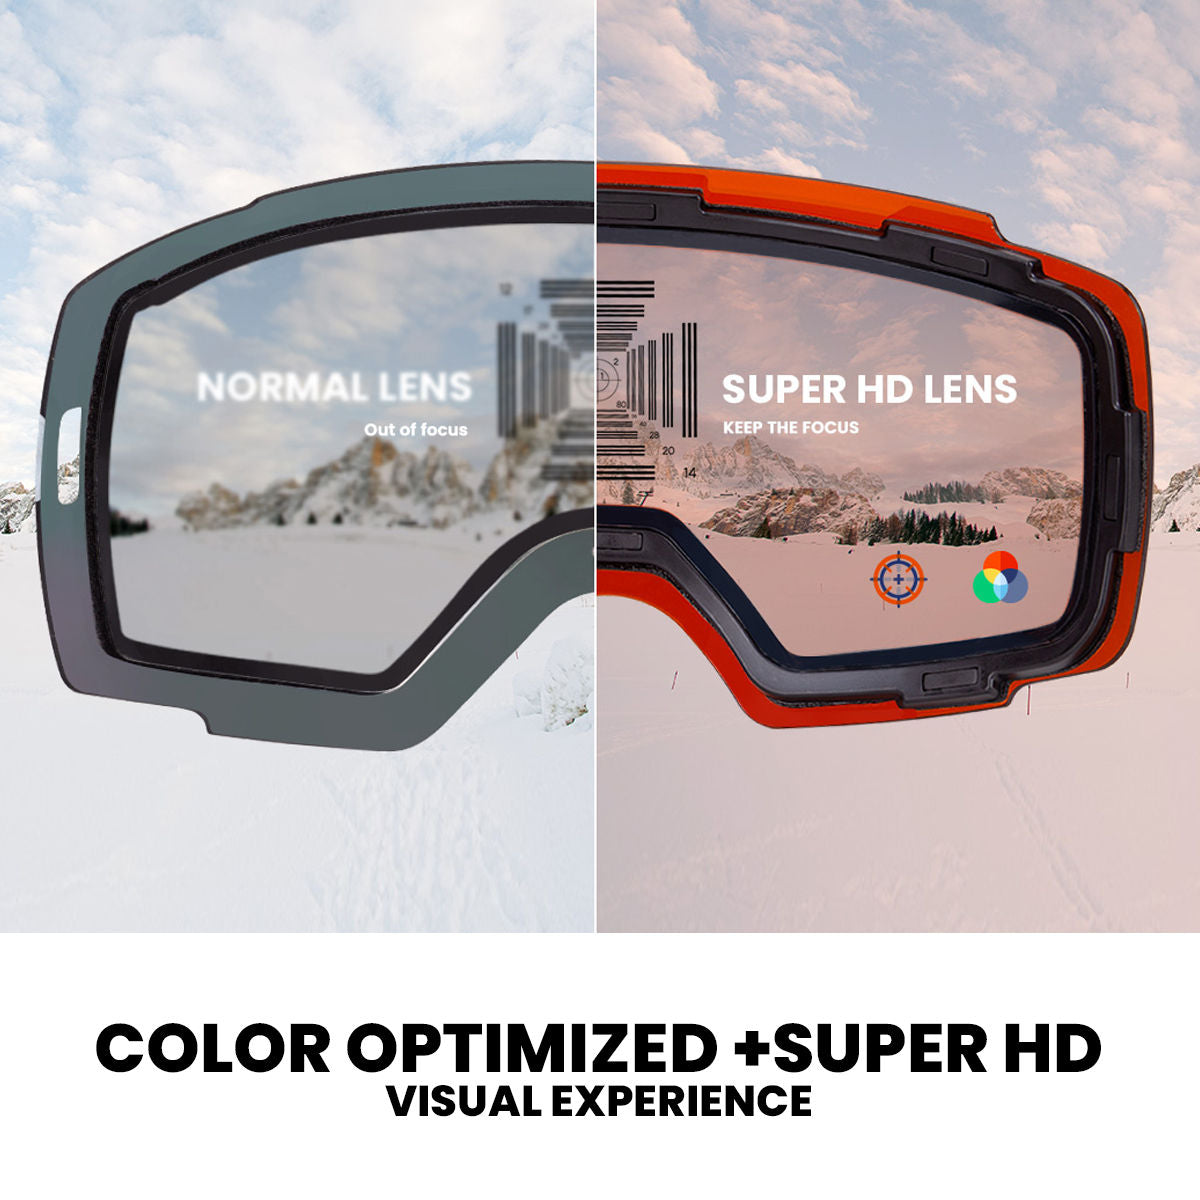 hd and color-optimization ski goggles